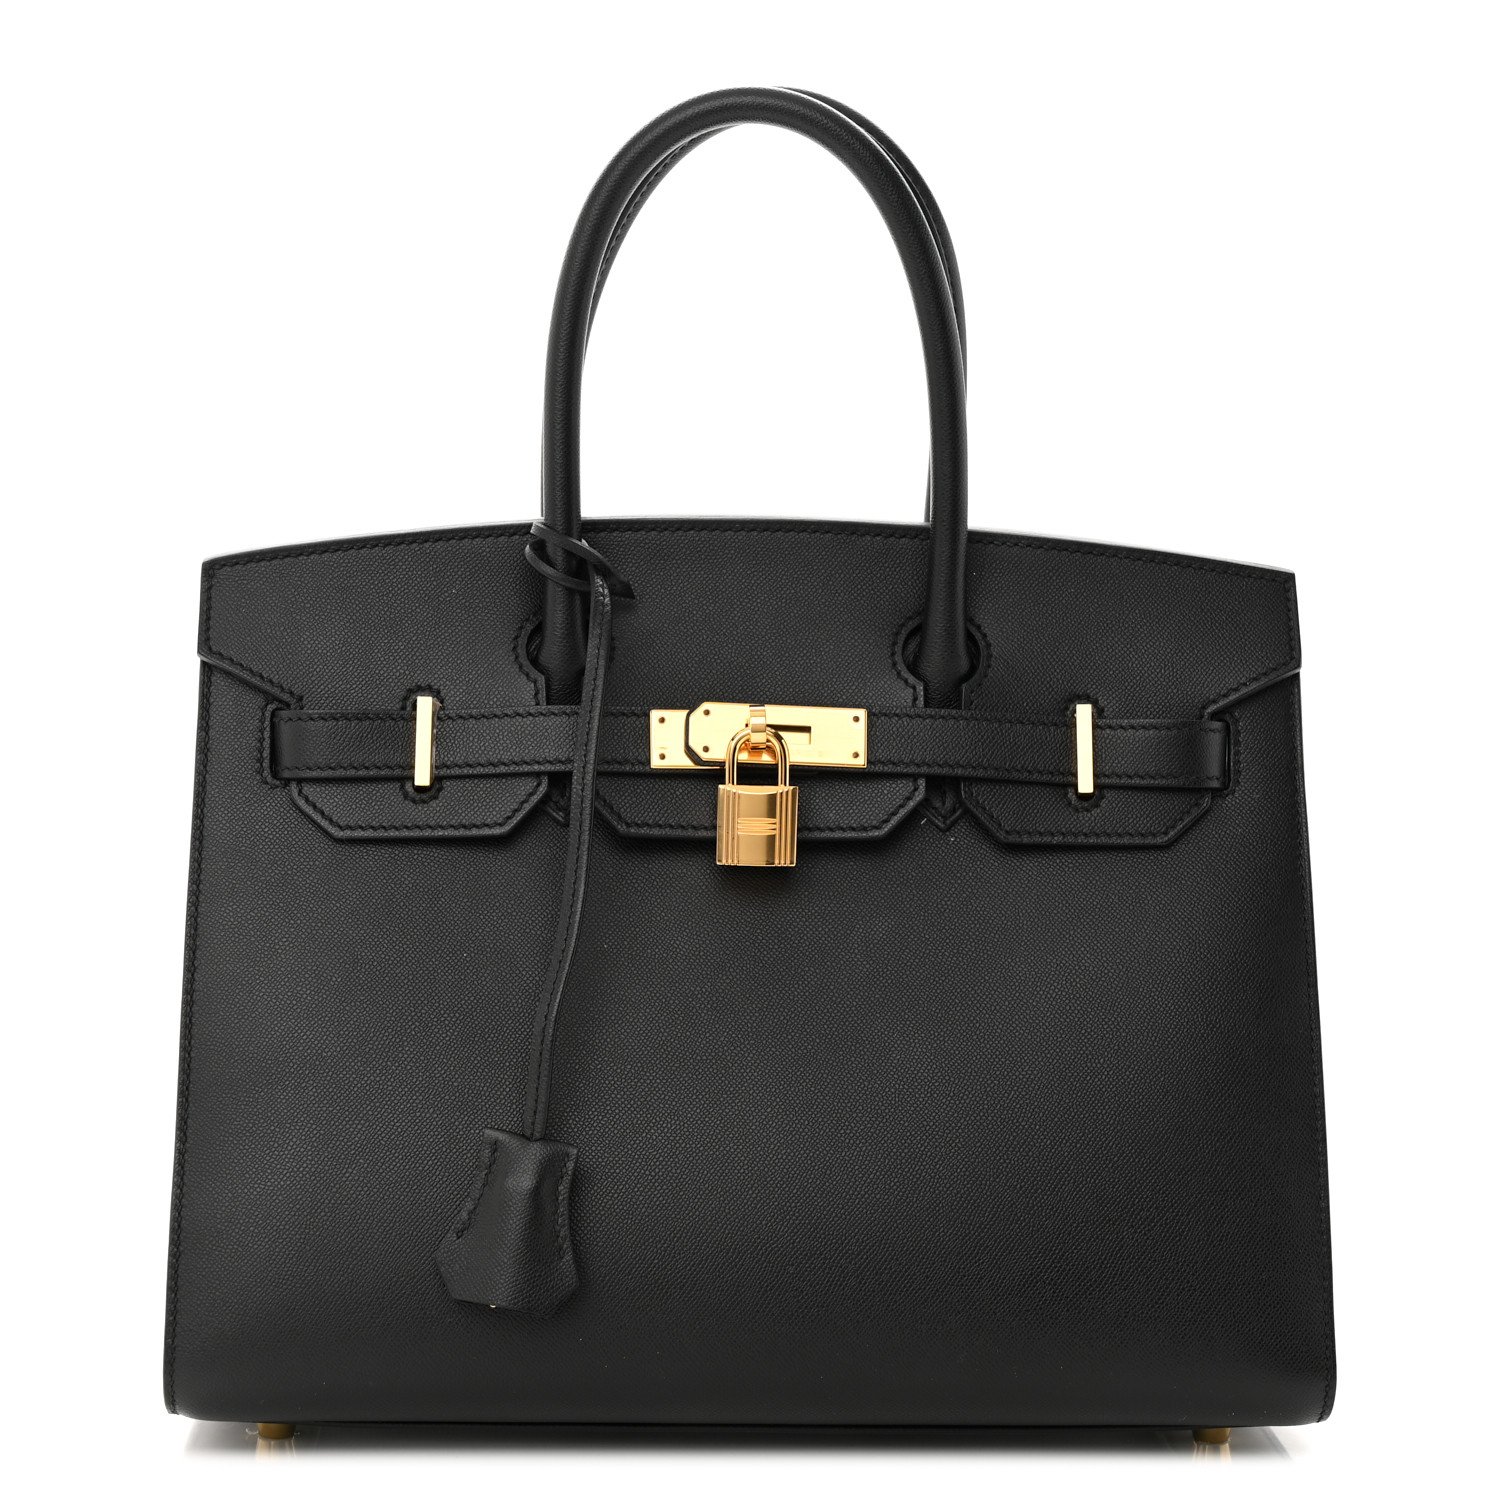 Hermès Craie | Hermès Craie Bags For Sale | Madison Avenue Couture